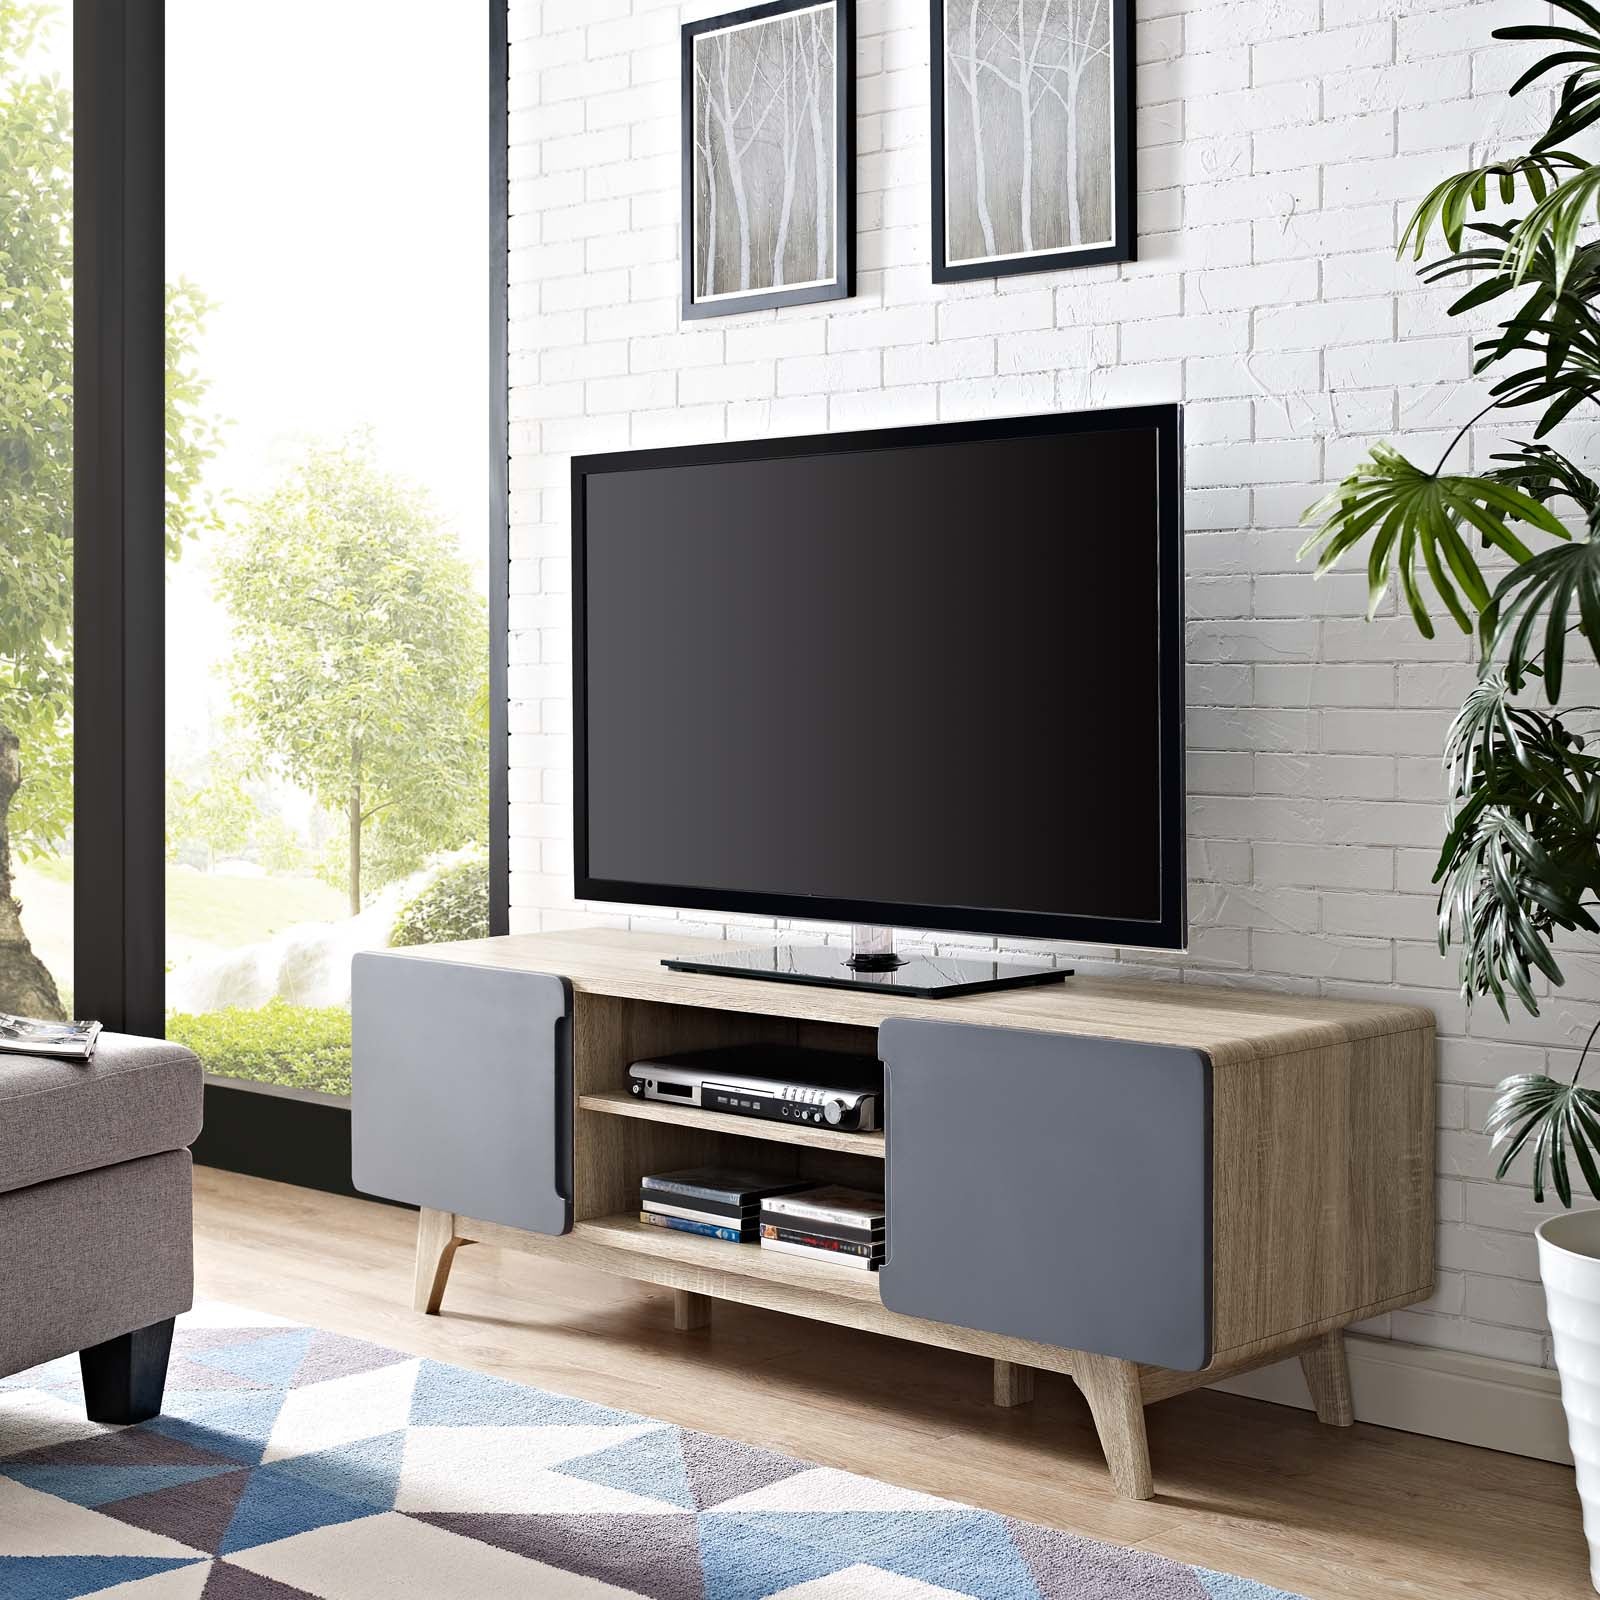 Mueble para TV 59” Hades color nogal con puertas grises en una sala.